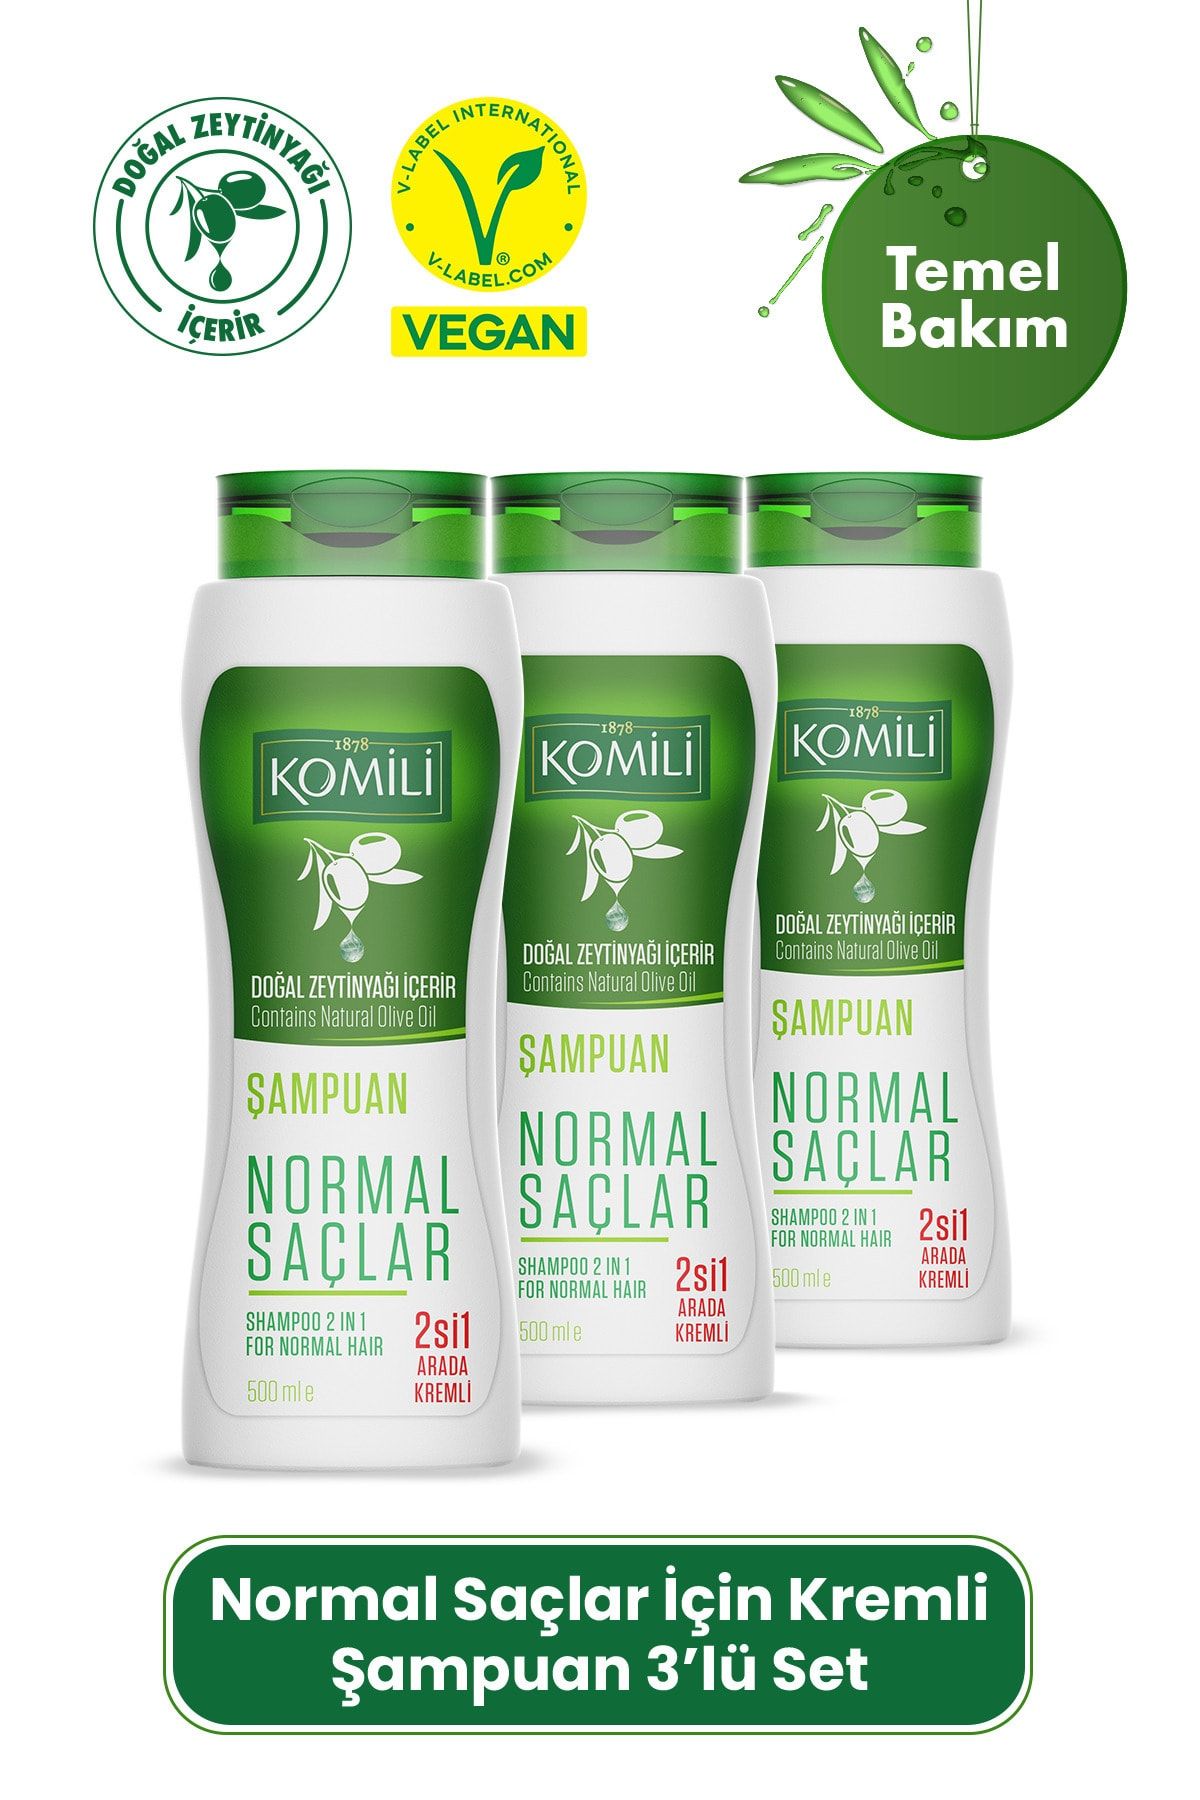 Komili Normal Saçlar İçin 2'si 1 Arada Kremli Vegan Temel Bakım Şampuanı 3'lü Set- - 3 X 500 ML